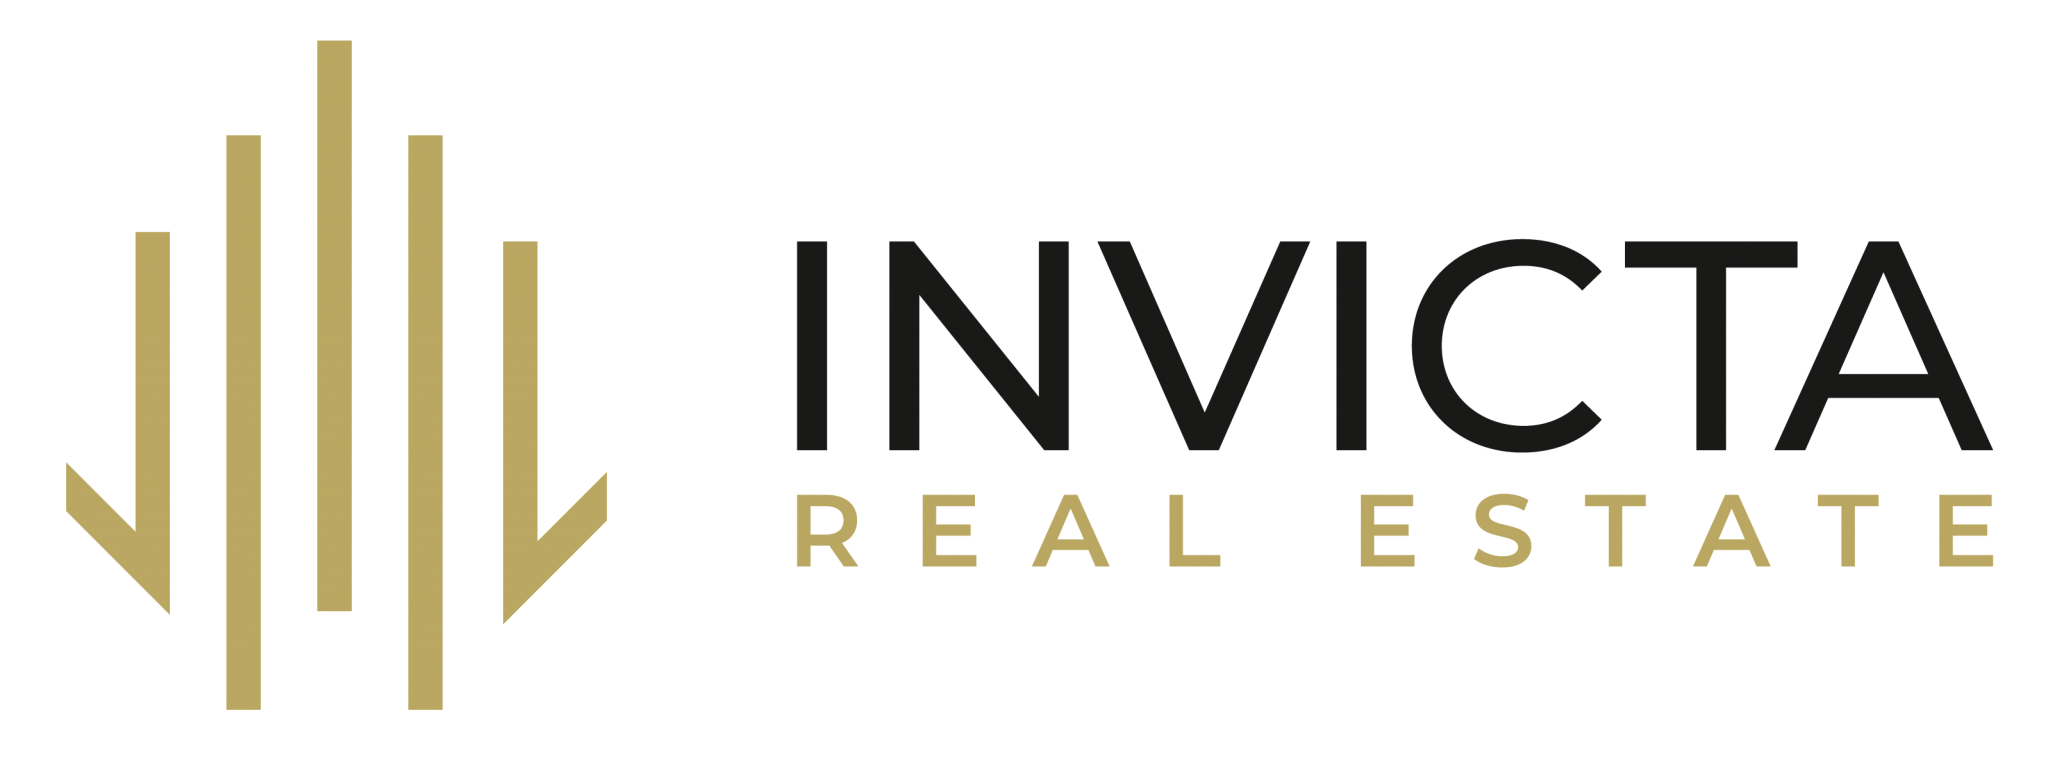 INVICTA Real Estate GmbH